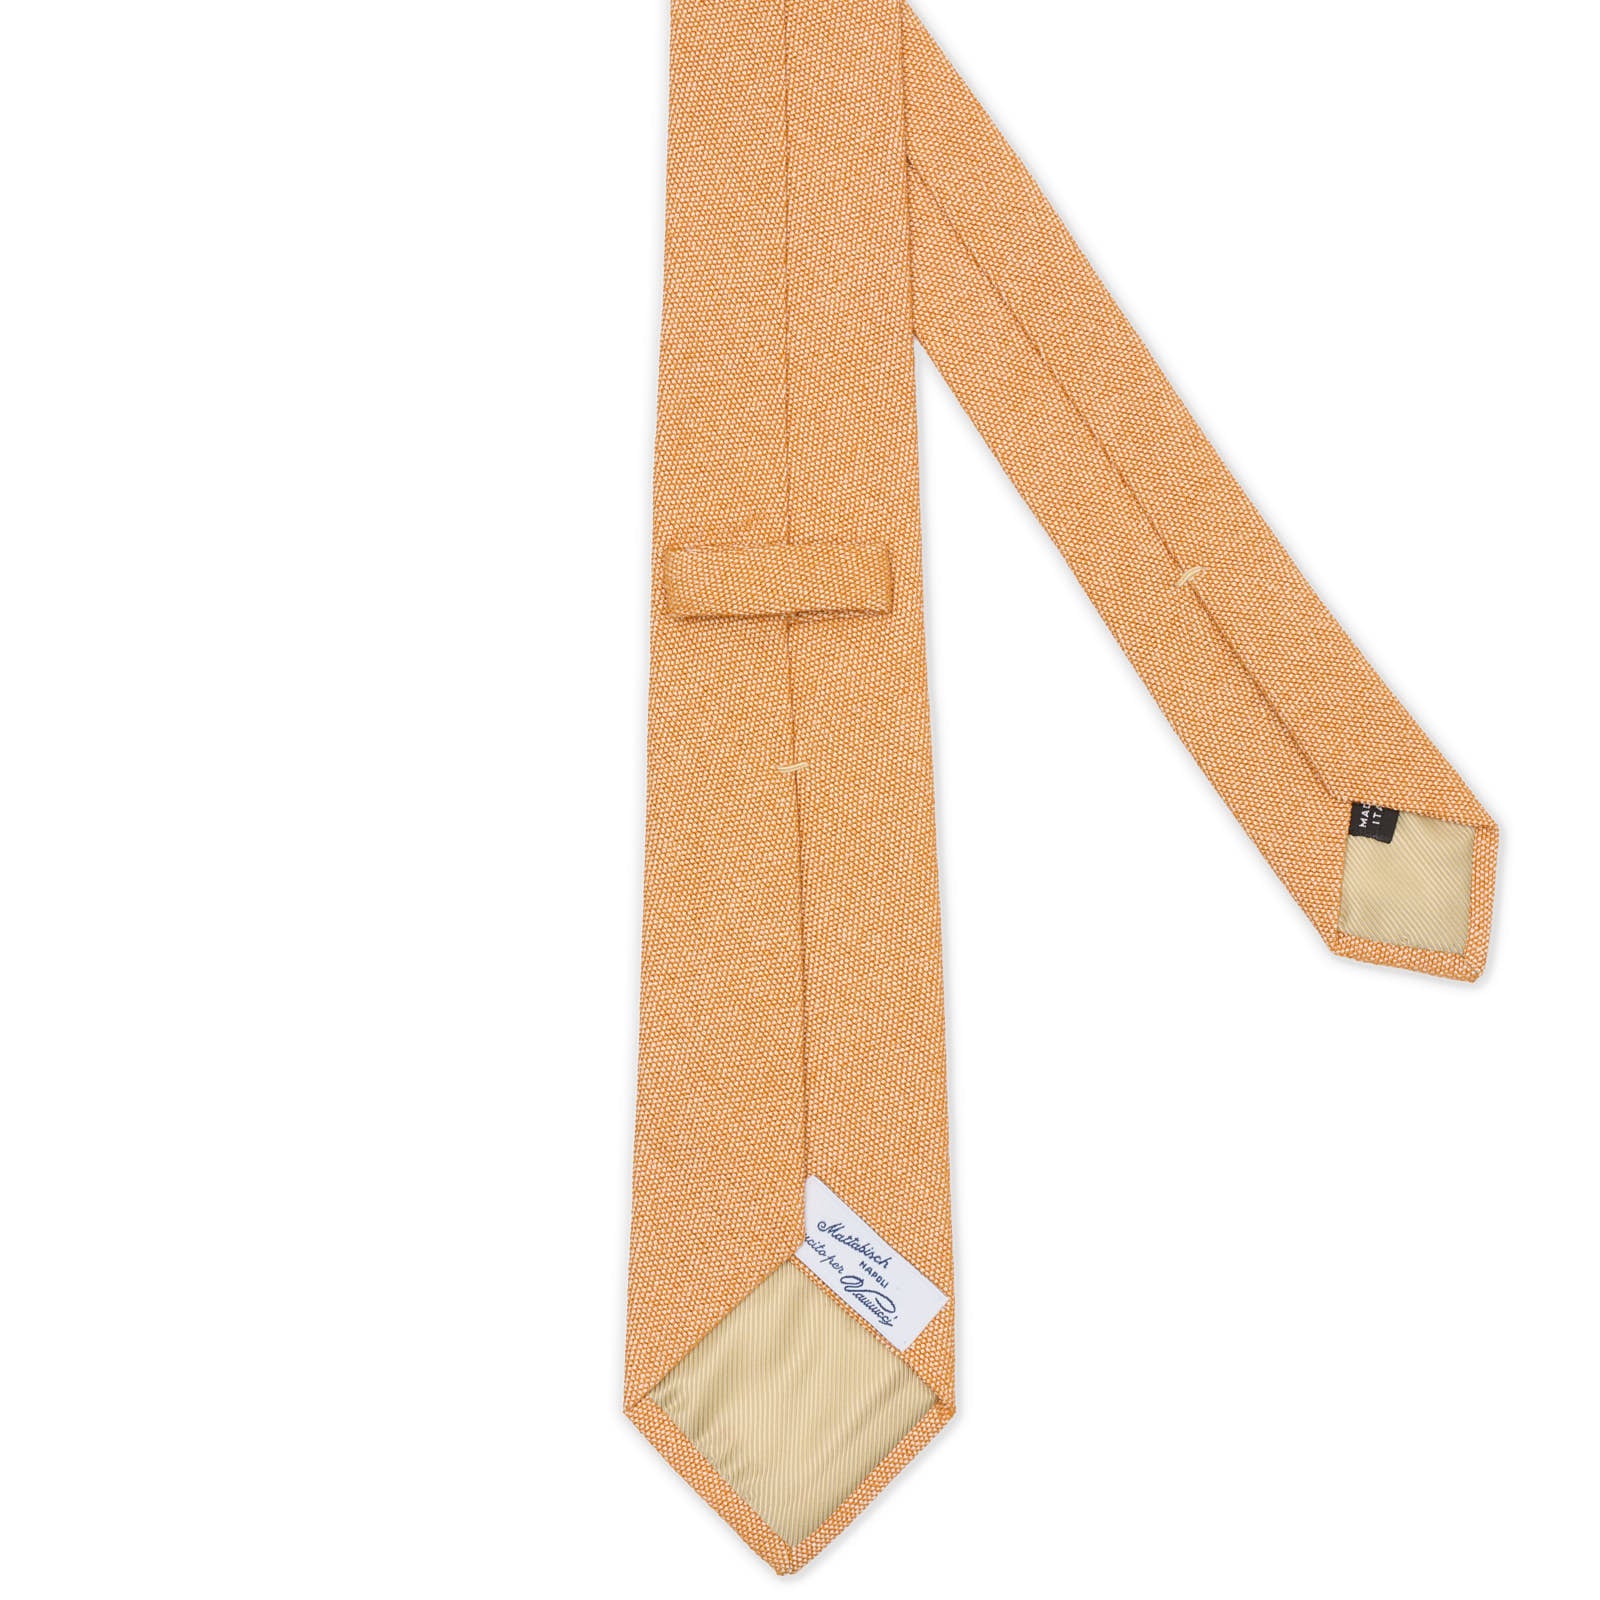 MATTABISCH for VANNUCCI Orange Birdseye Silk Tie NEW